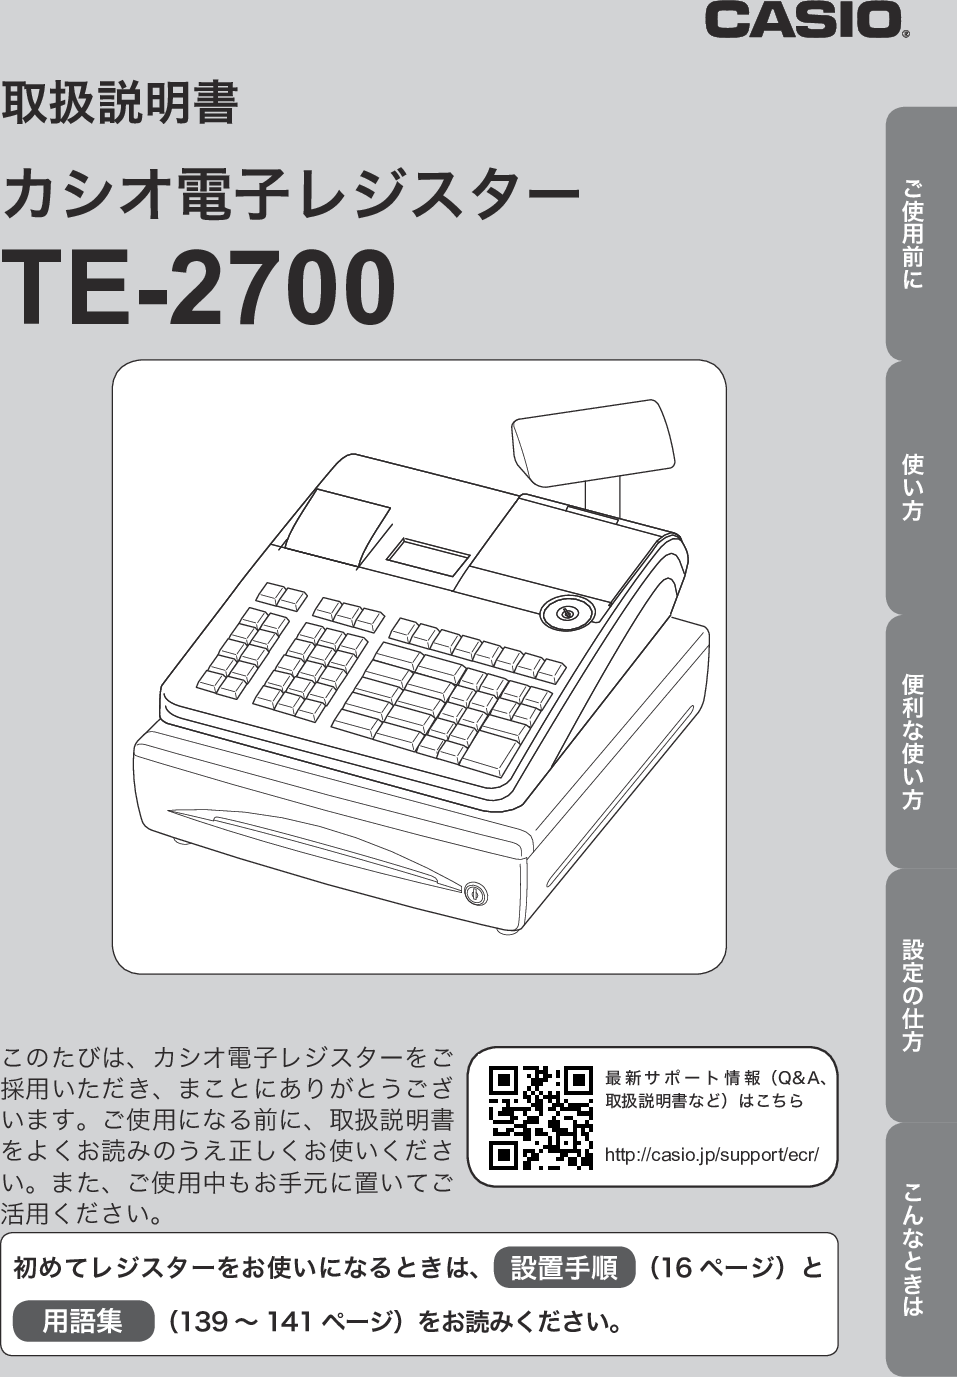 Casio 取扱説明書 TE2700 JA2